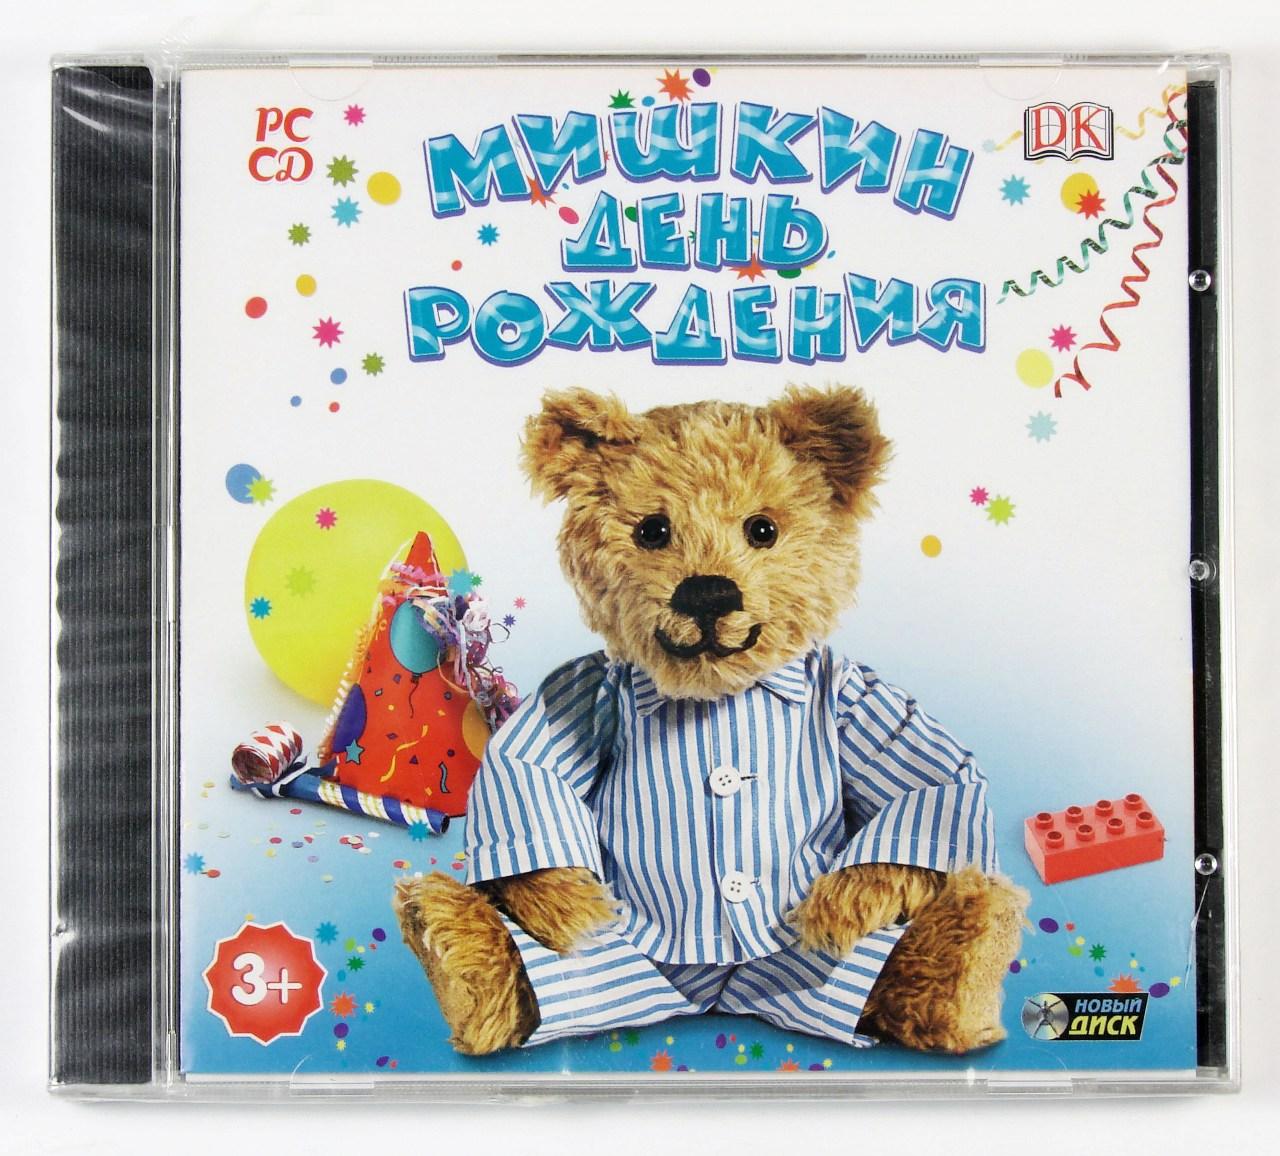 Компьютерный компакт-диск Мишкин день рождения (ПК), фирма "Новый Диск", 1 CD